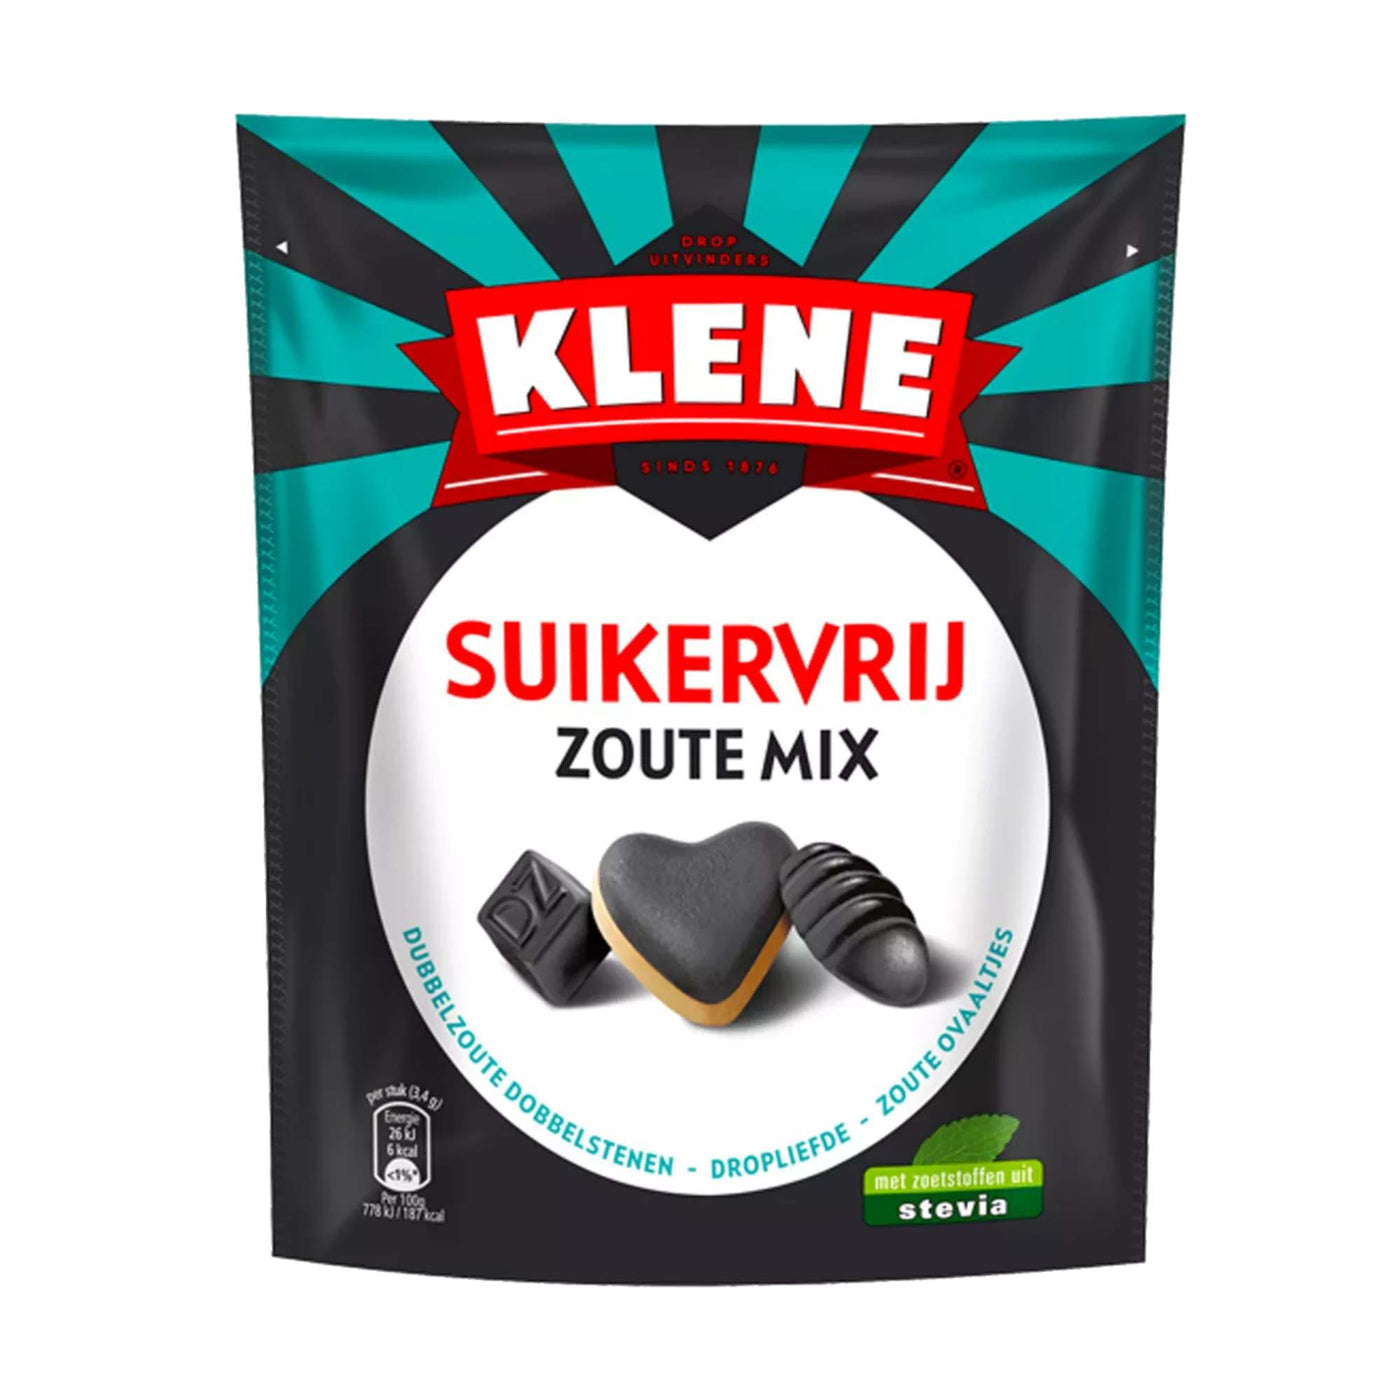 Klene Zoute Mix - Sugar Free Dutch Salt & Salmiak Liquorice Mix